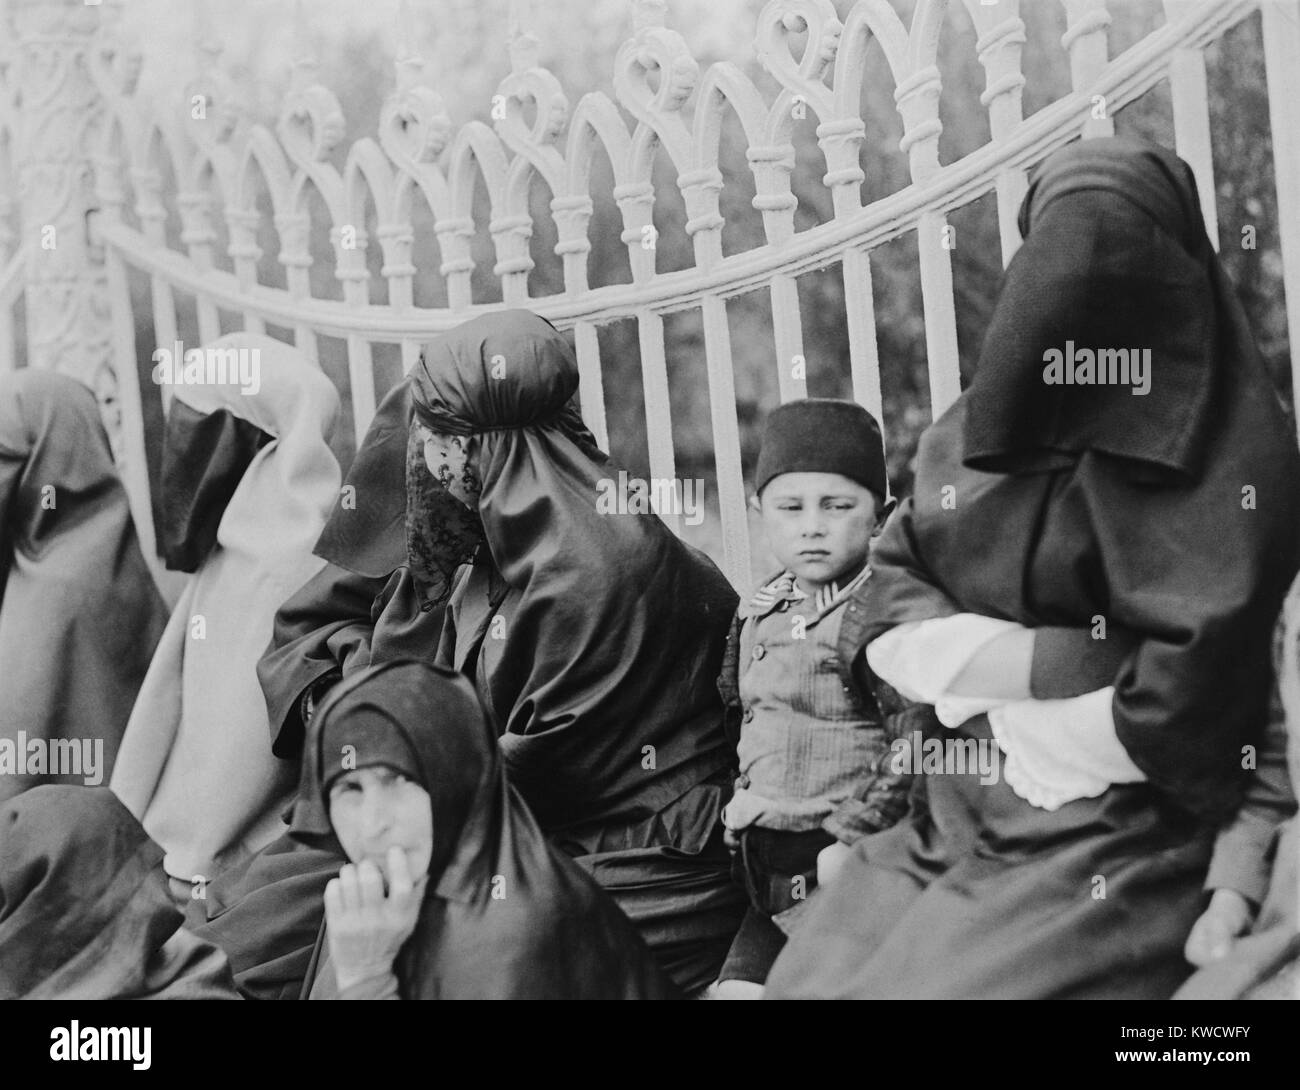 Verschleierte Frauen im Islam in Konstantinopel im Jahre 1919. In den 1920er Jahren, die neue türkische Führer, Kemal Atatürk, erlaubt den Frauen die Freiheit, moderne Kleidung zu tragen (BSLOC 2017 1 116) Stockfoto